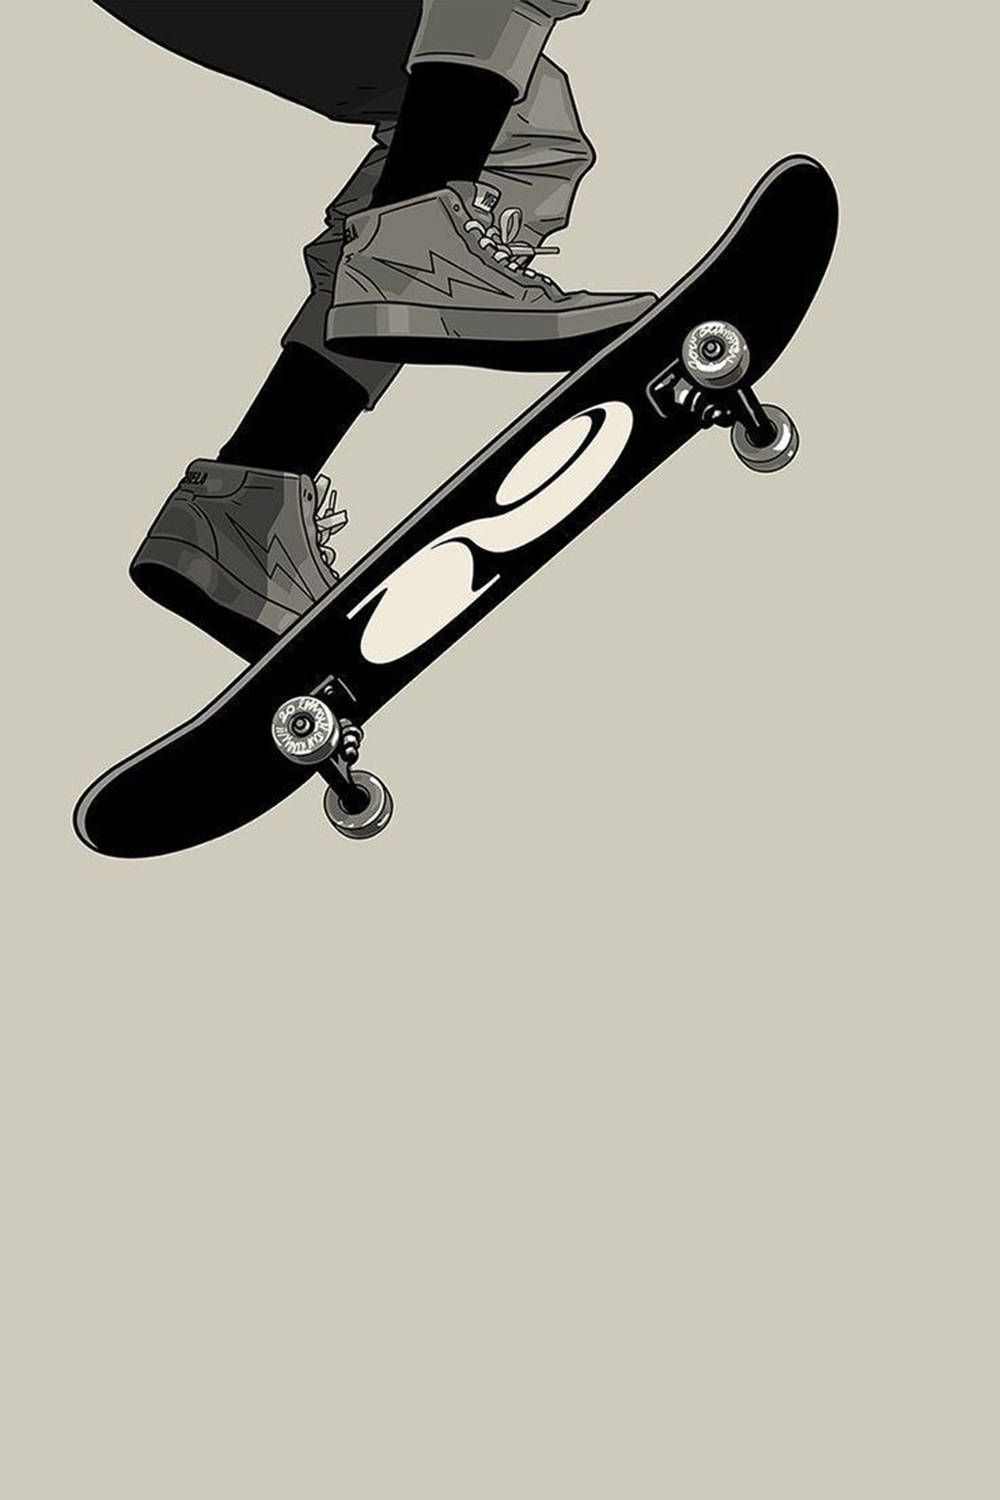 Download Black And White Stunt Skater Aesthetic Digital Art Wallpaper